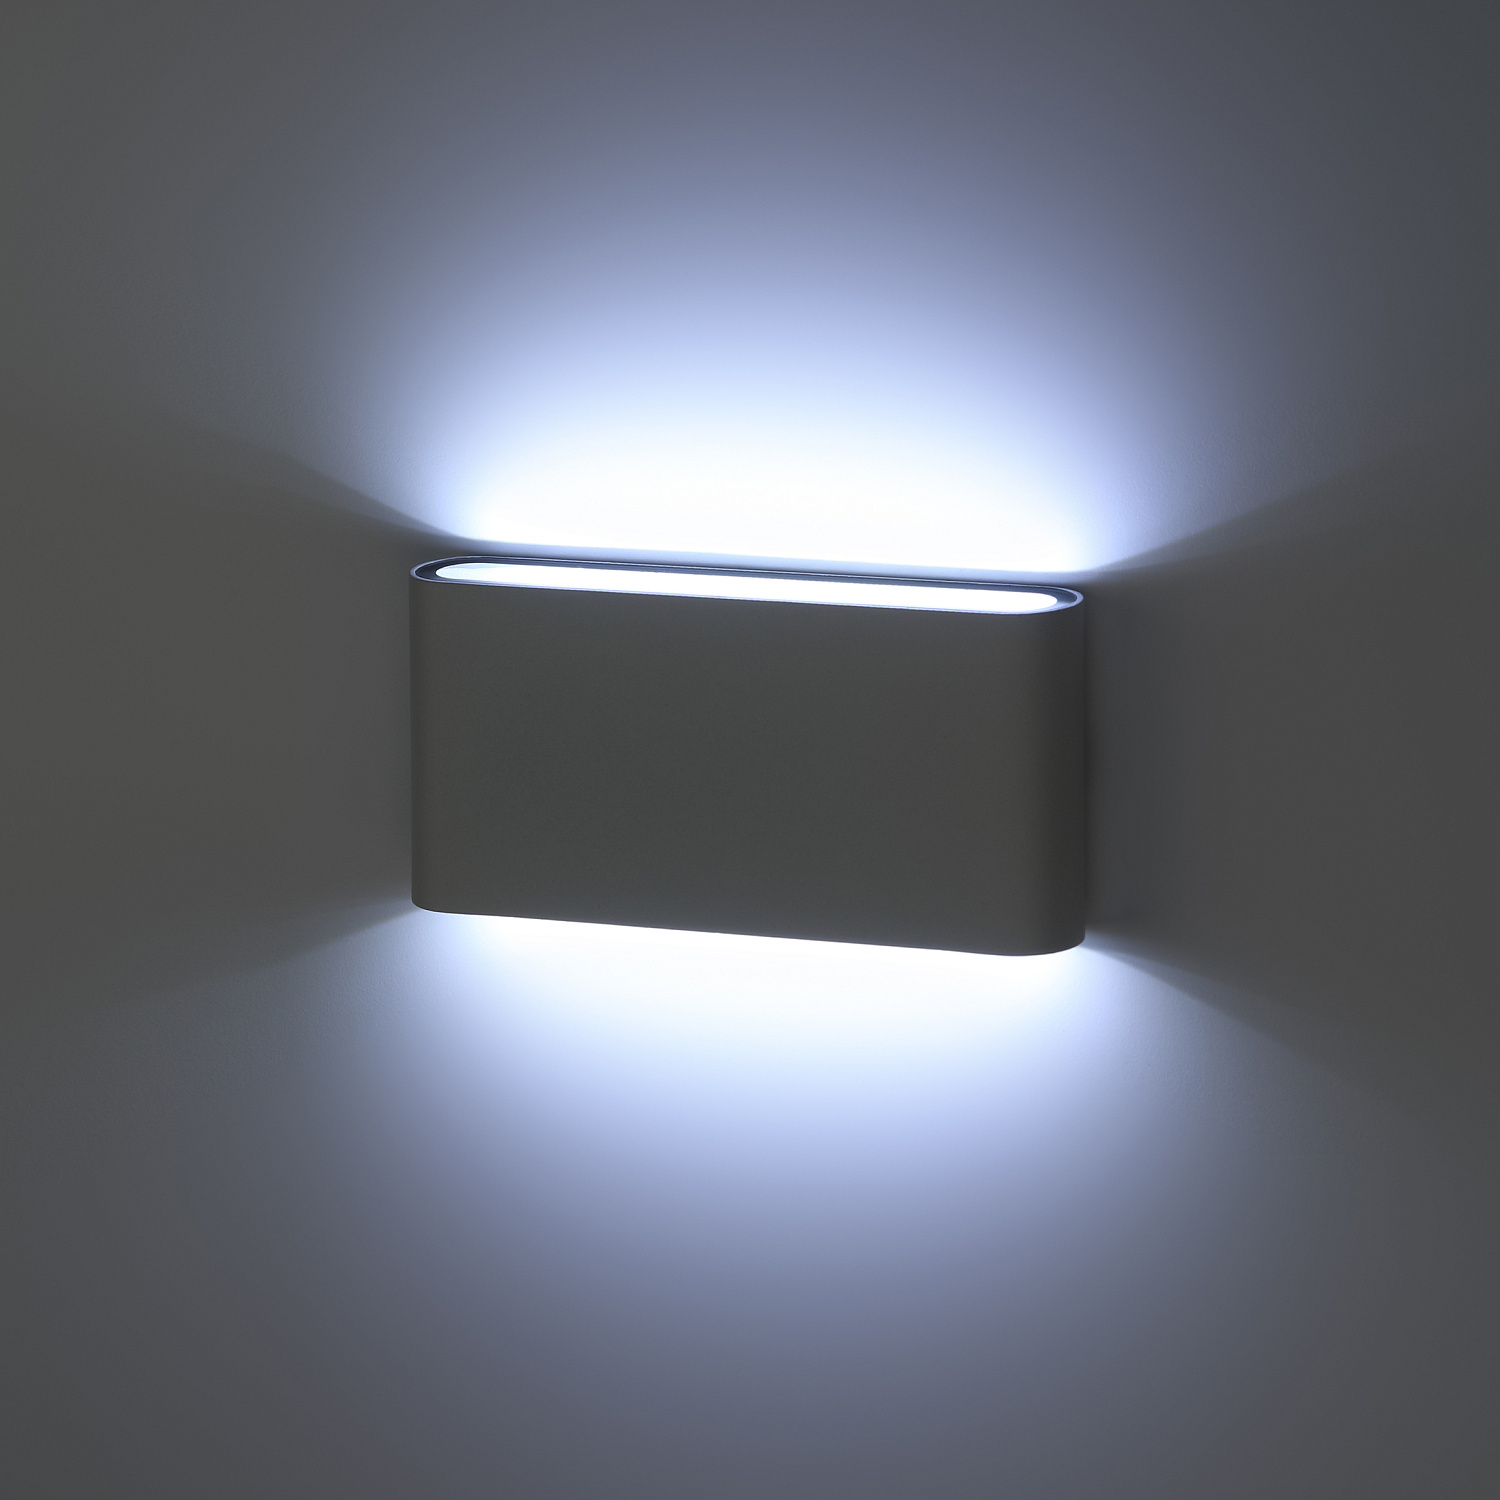 Декоративная подсветка ЭРА WL41 WH светодиодная 10Вт 3500К белый IP54 для интерьера, фасадов зданий Б0054419 ЭРА (Энергия света)